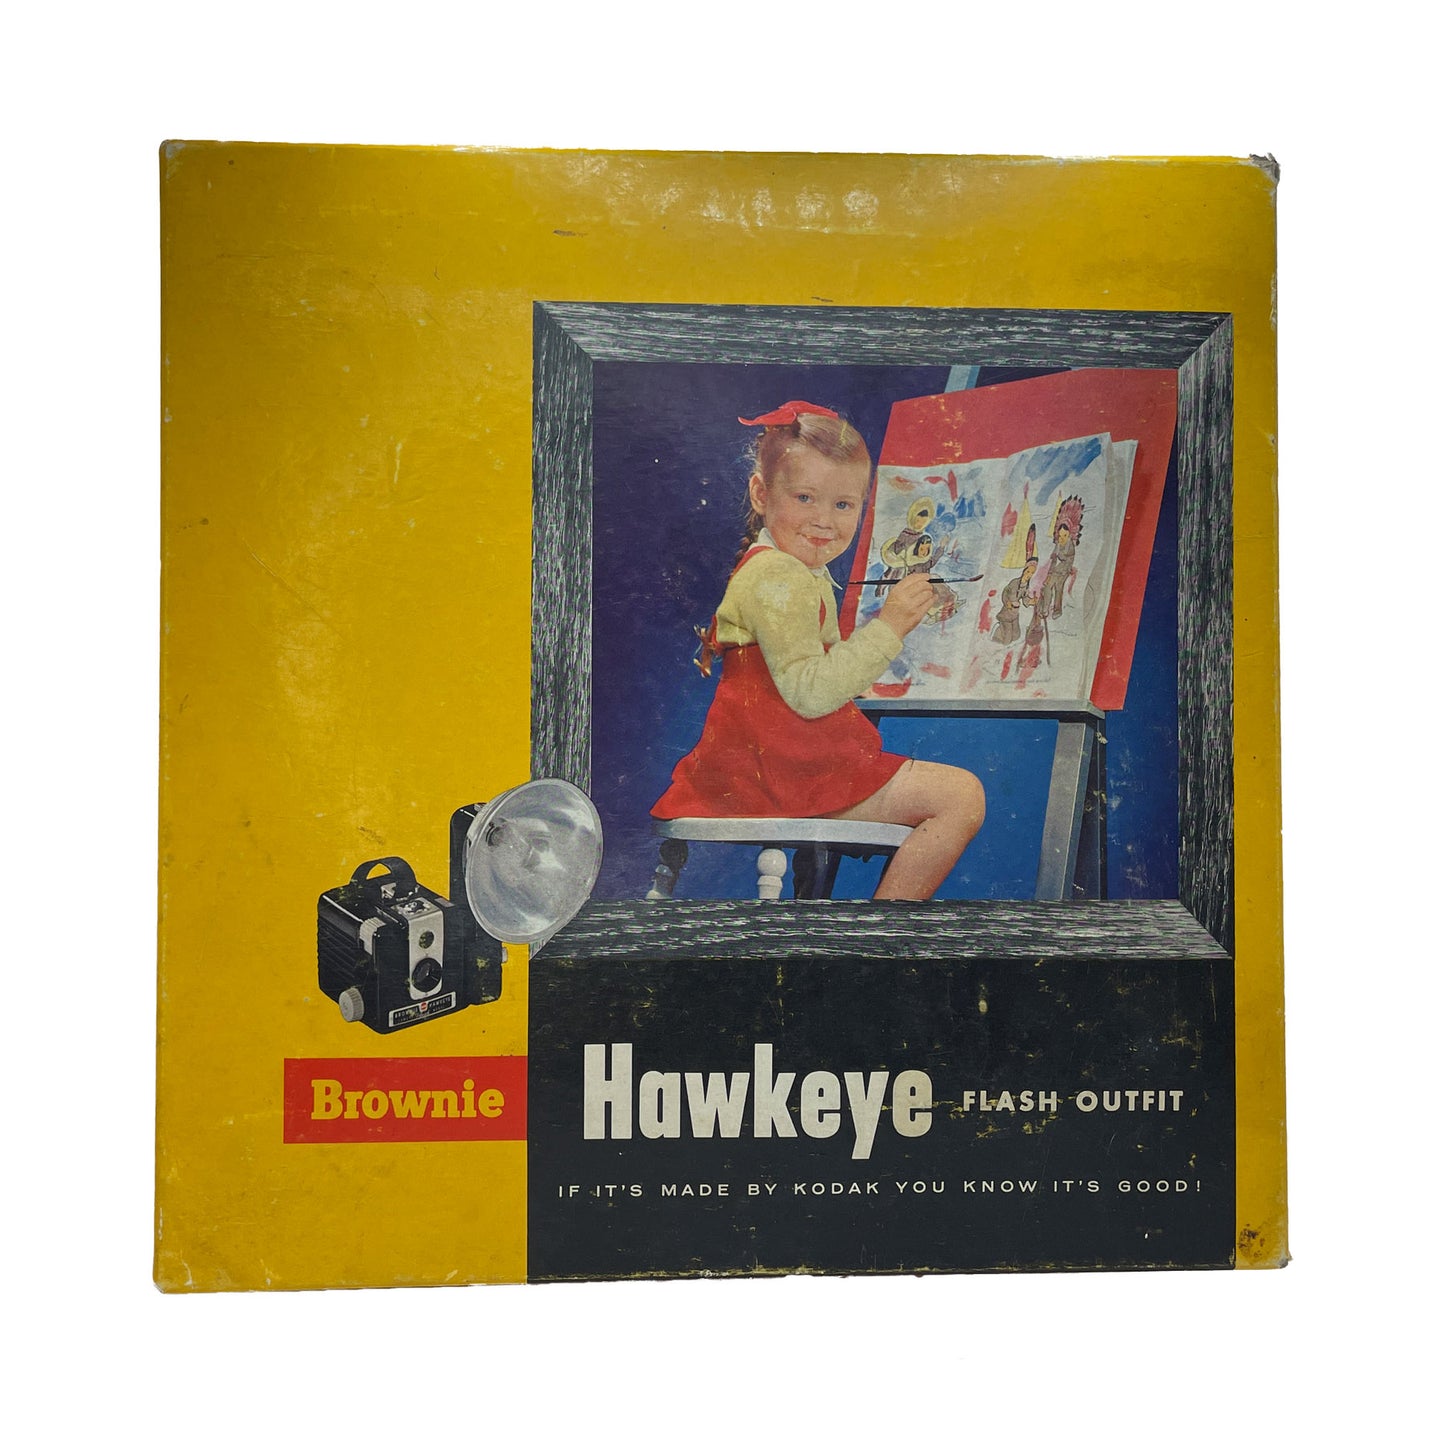 Vintage Kodak Brownie Hawkeye Flash Model with Flash Attachment